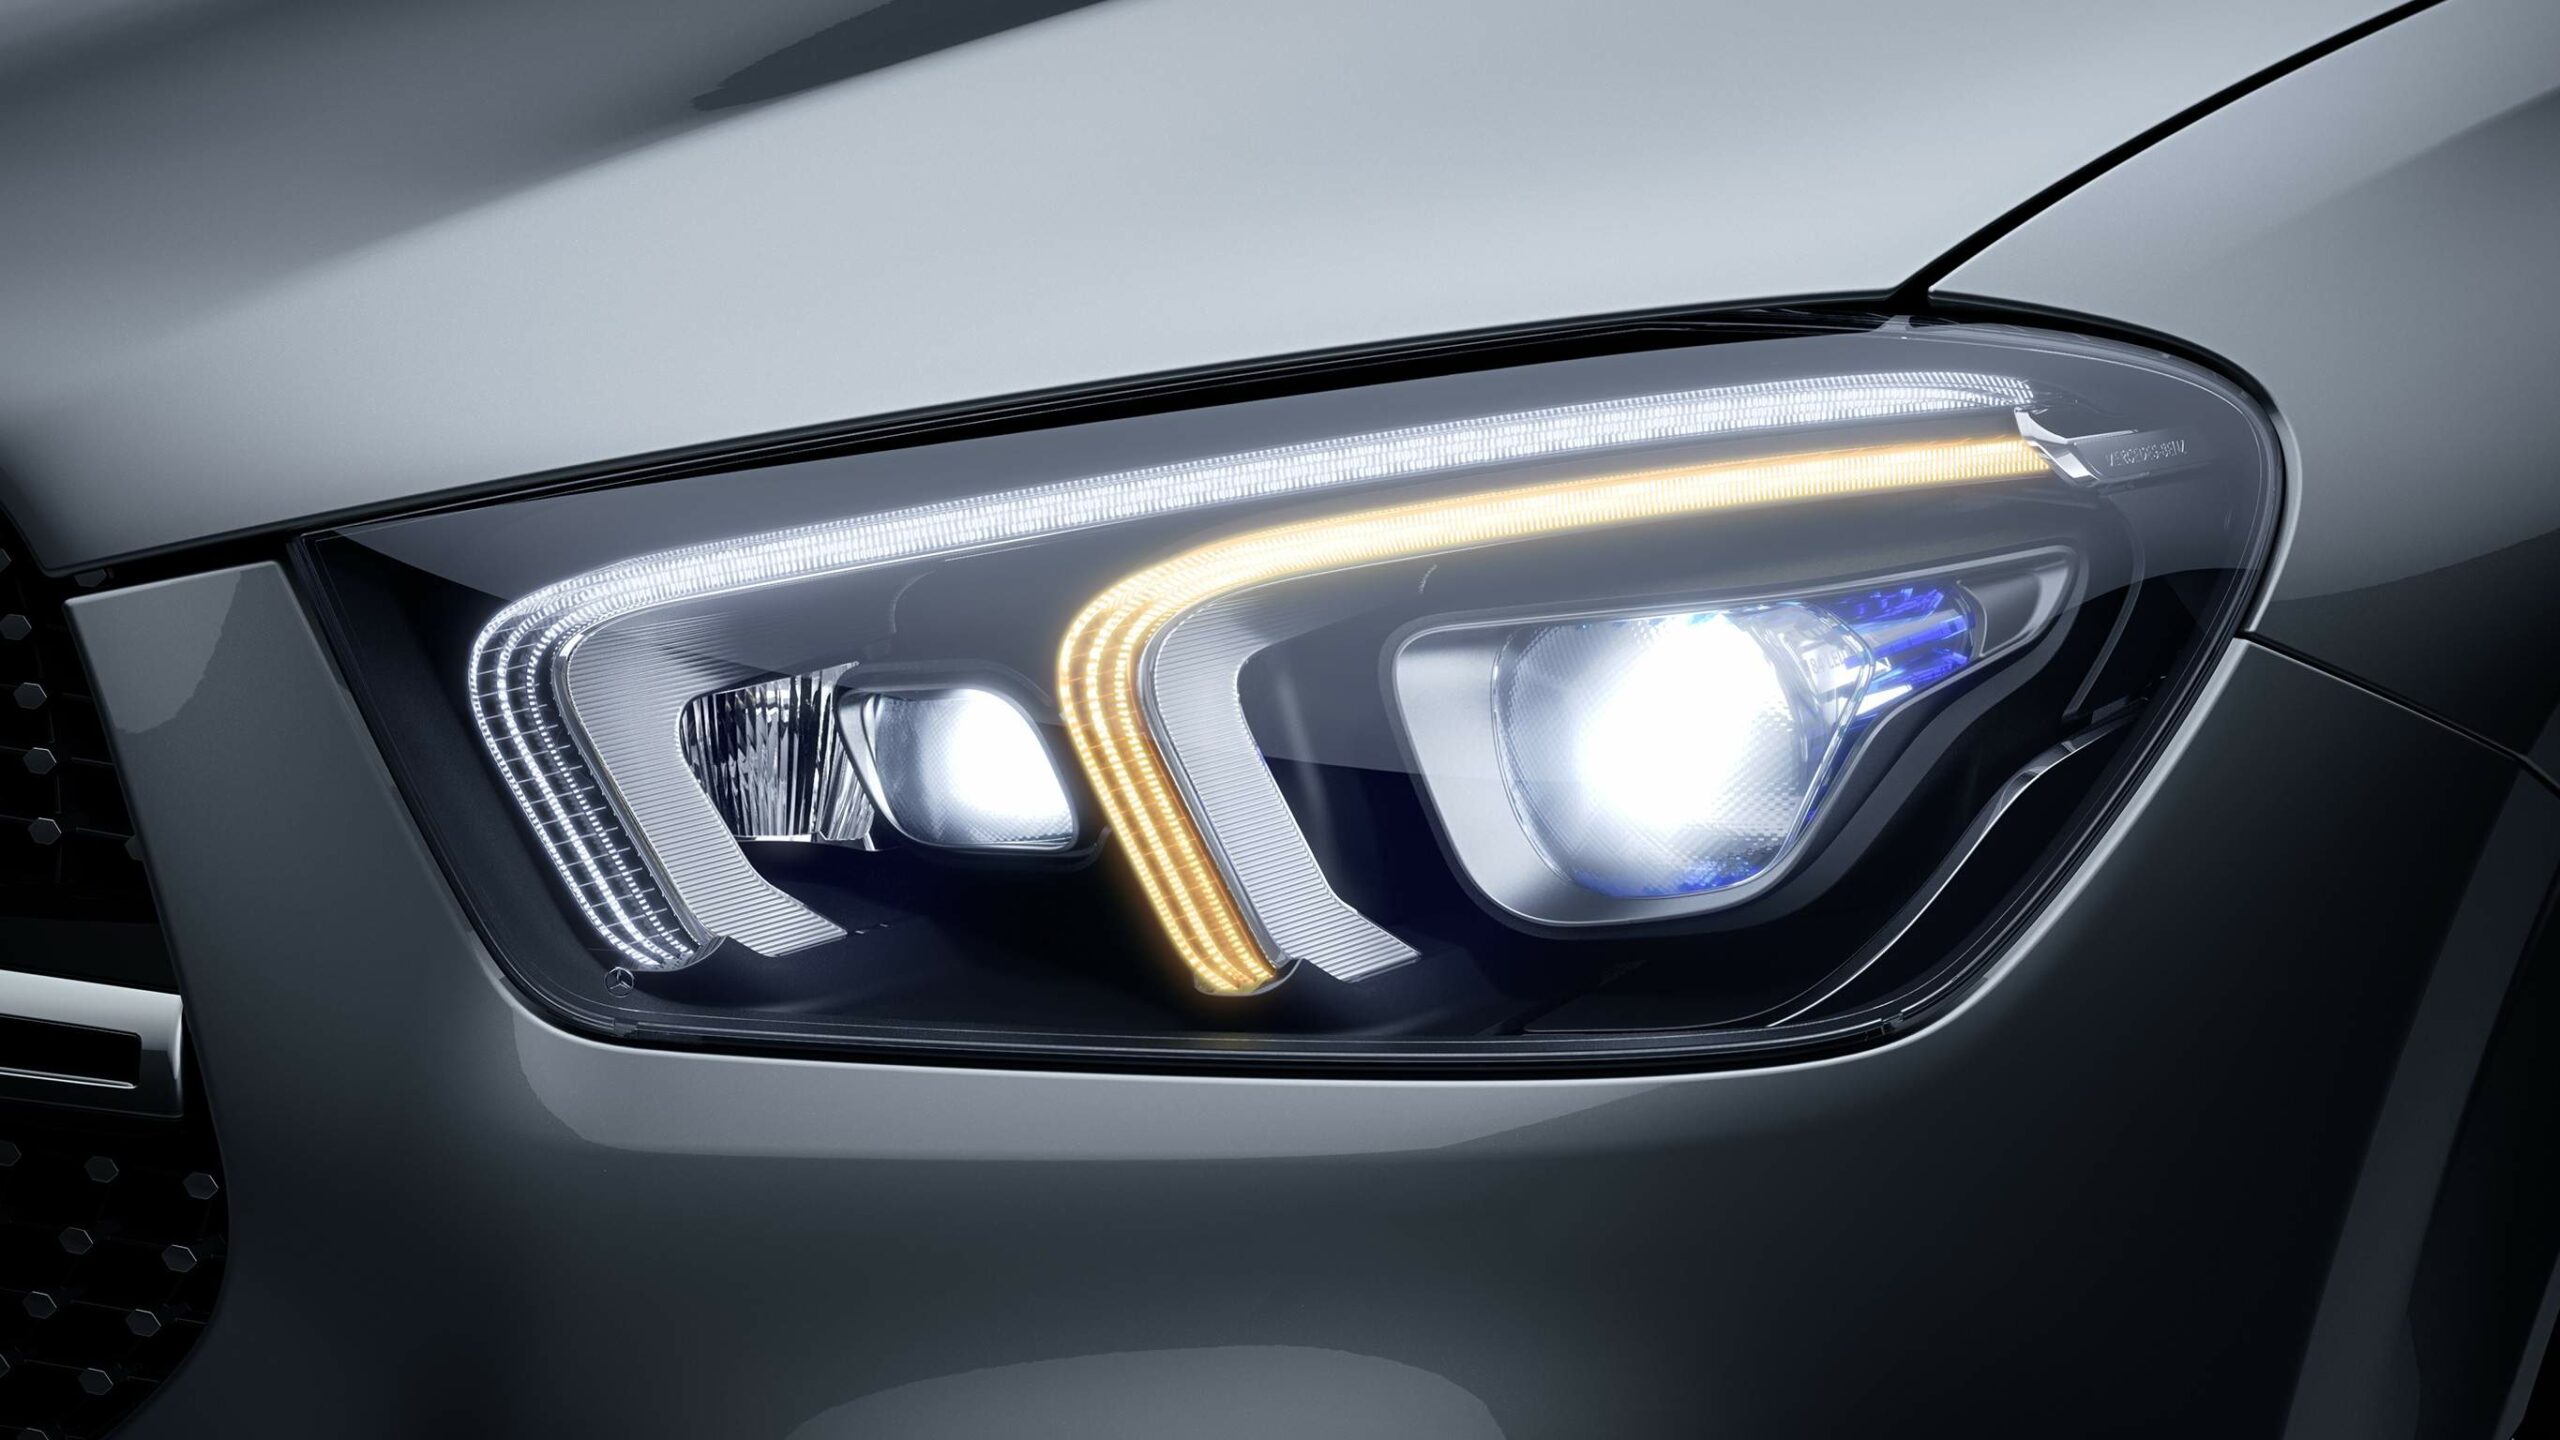 Luces LED de la GLE Coupe de Mercedes-Benz, maxima seguridad